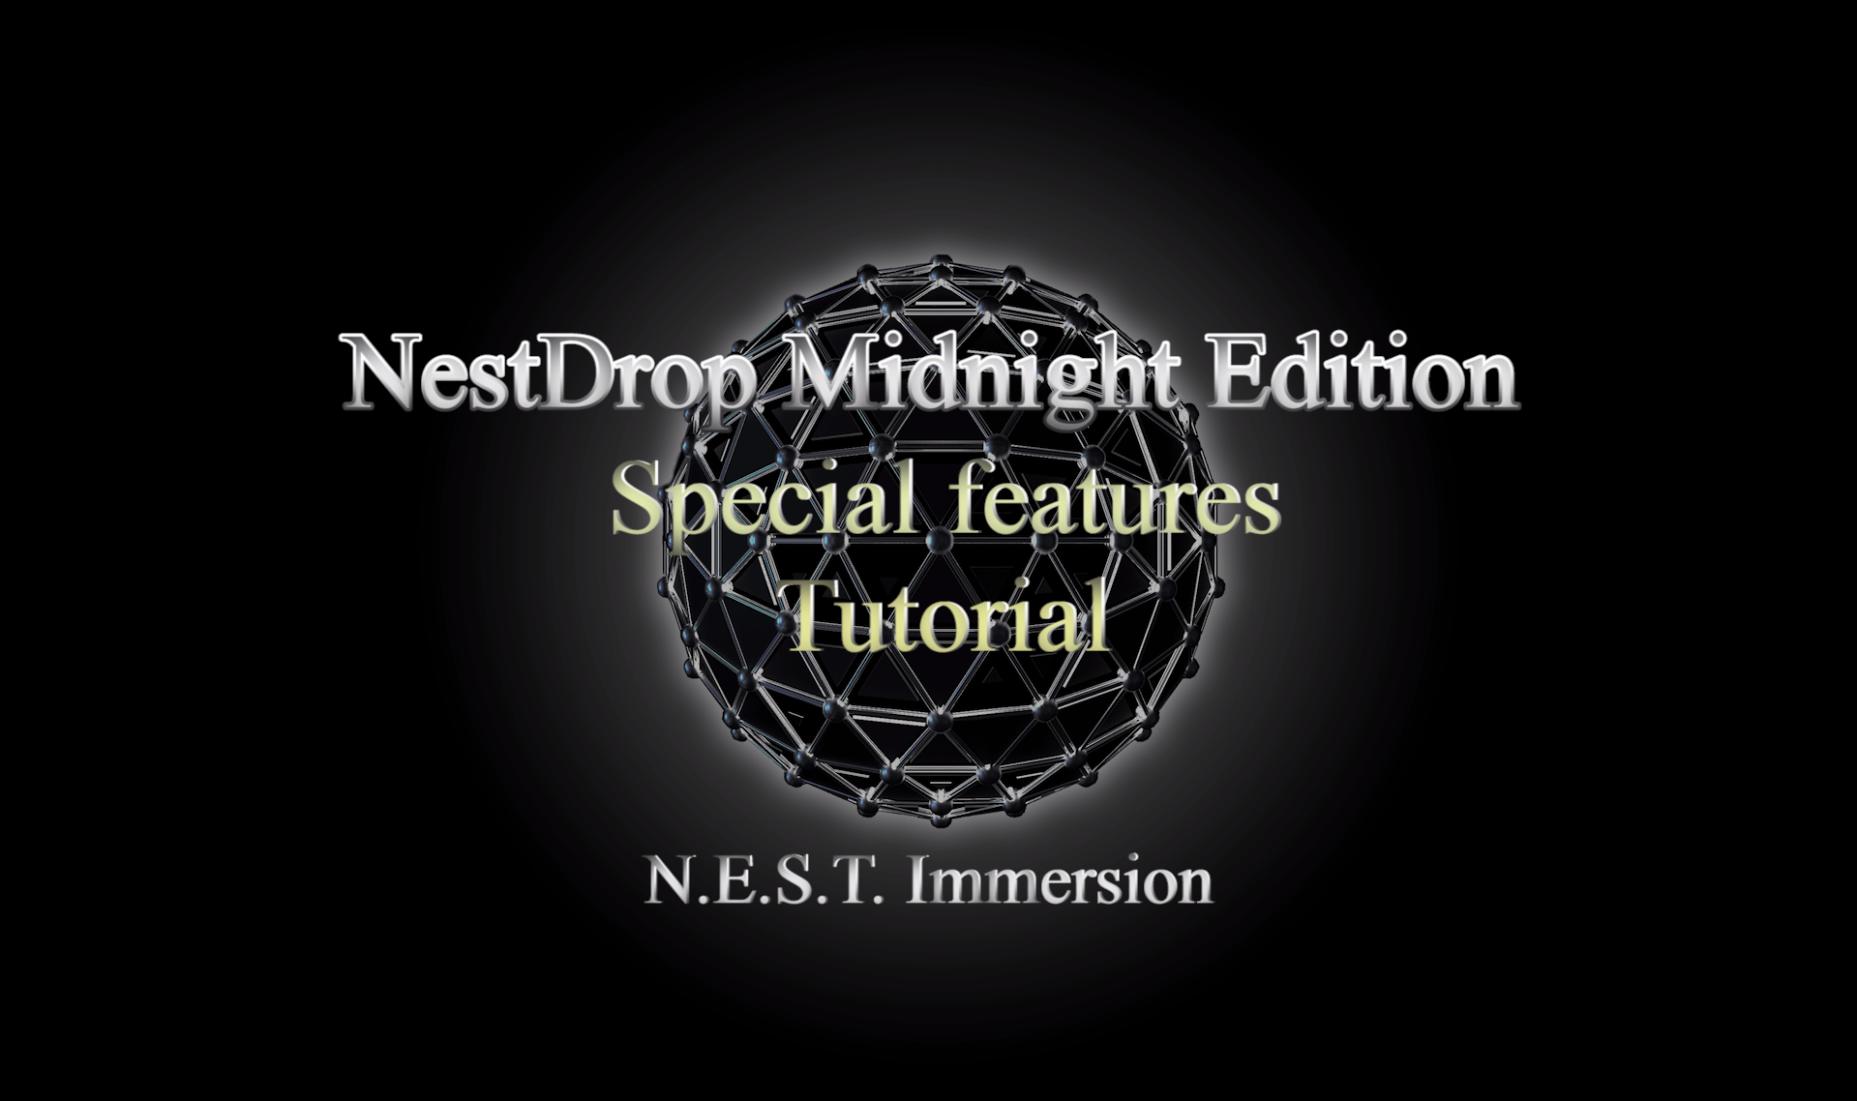 Nestdrop Midnight tutorial